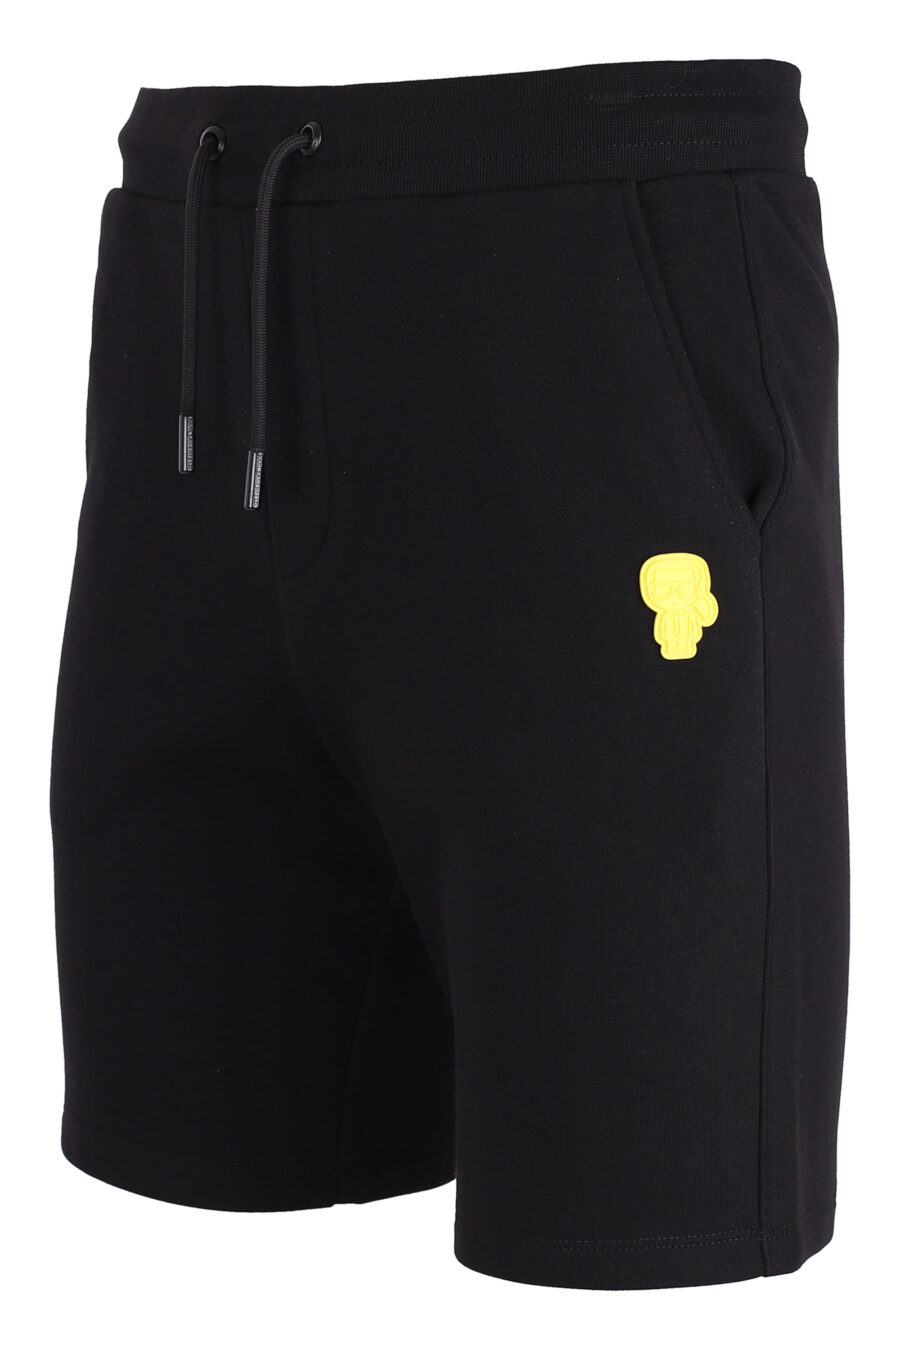 Pantalón corto de chandal negro con logo amarillo - IMG 4374